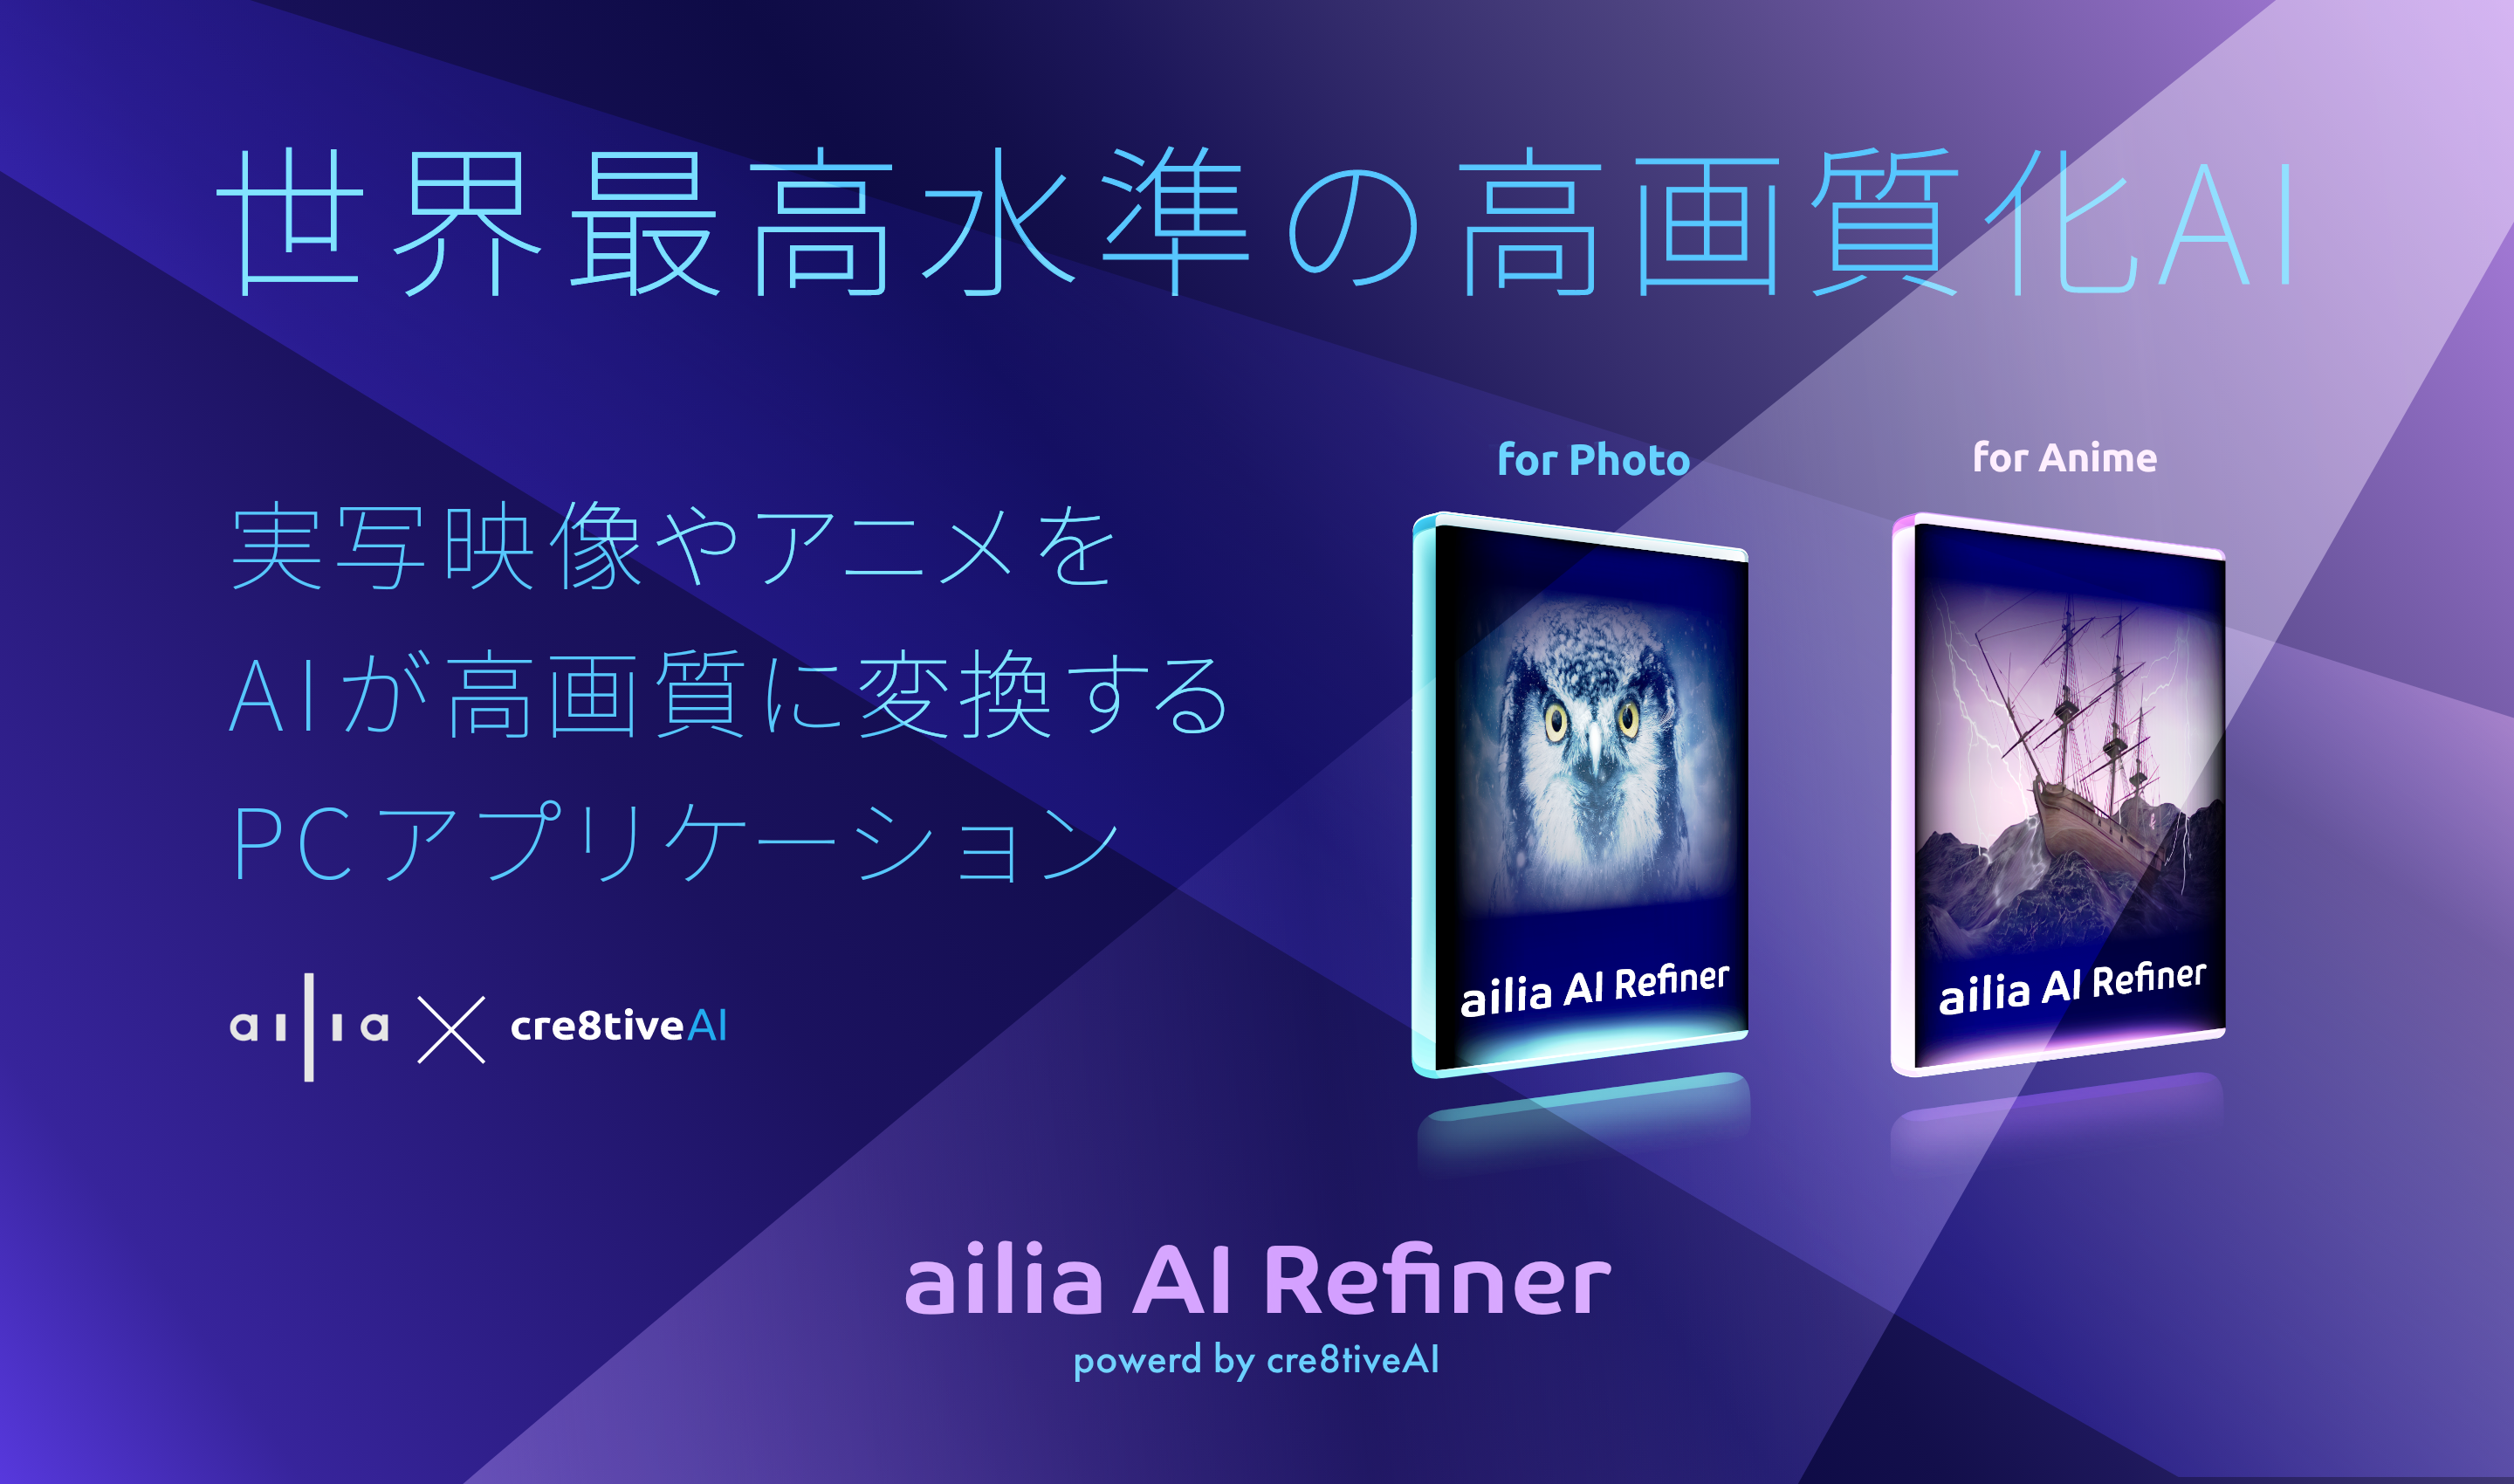 実写映像やアニメをaiで高画質化するailia Ai Refinerを提供開始 アクセルのプレスリリース